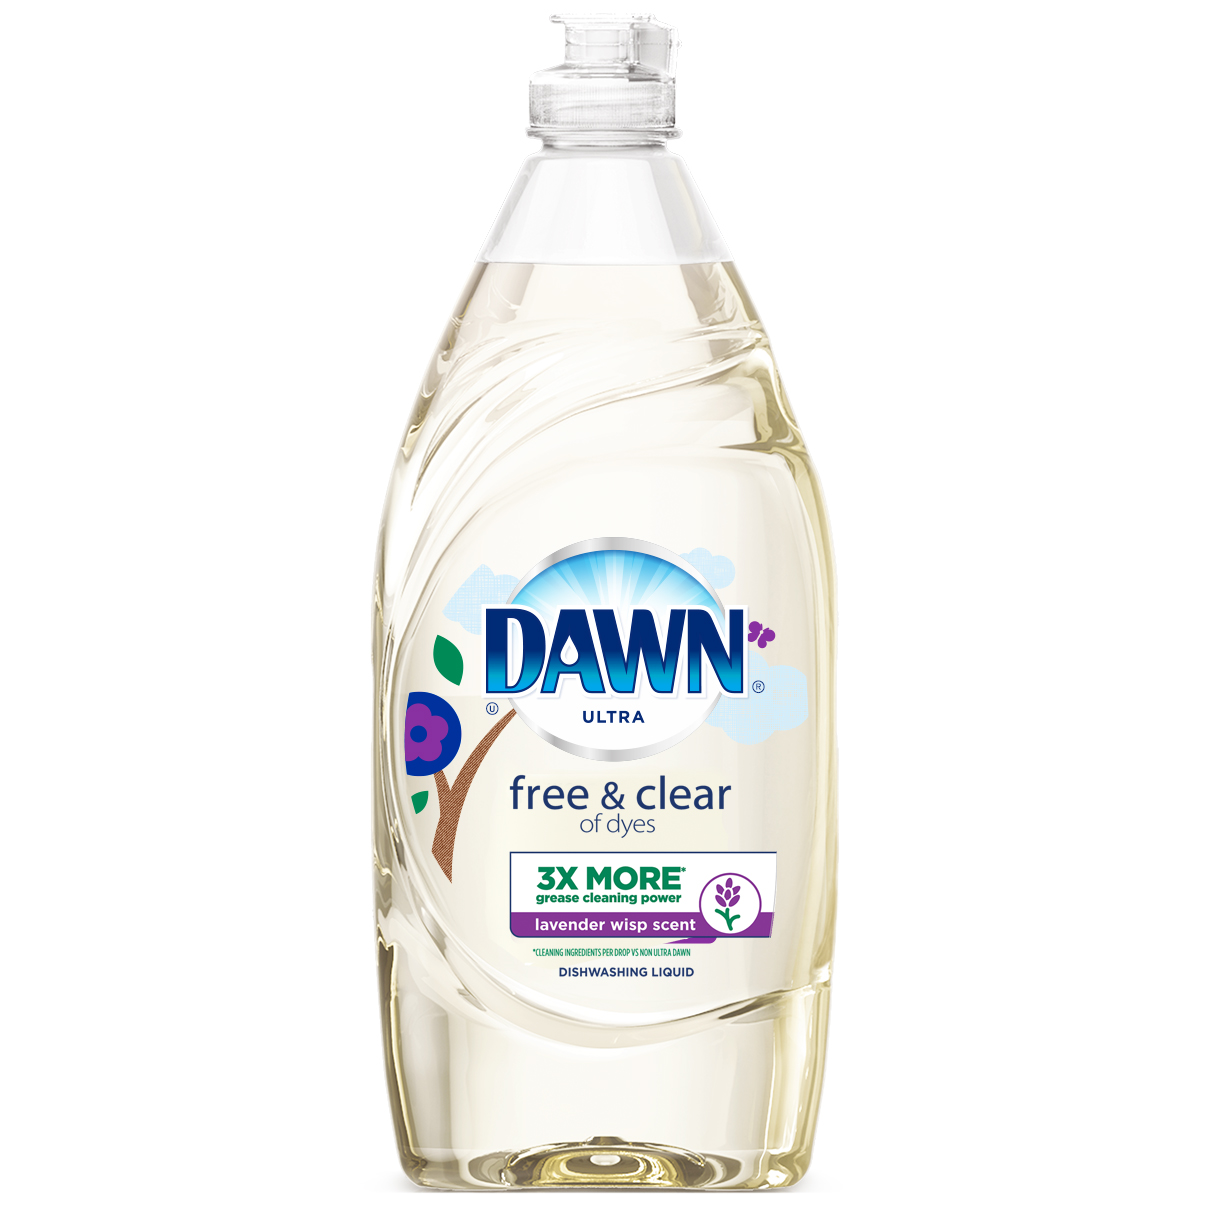 Dawn Free & Clear Dishwashing Liquid, Lavender Wisp